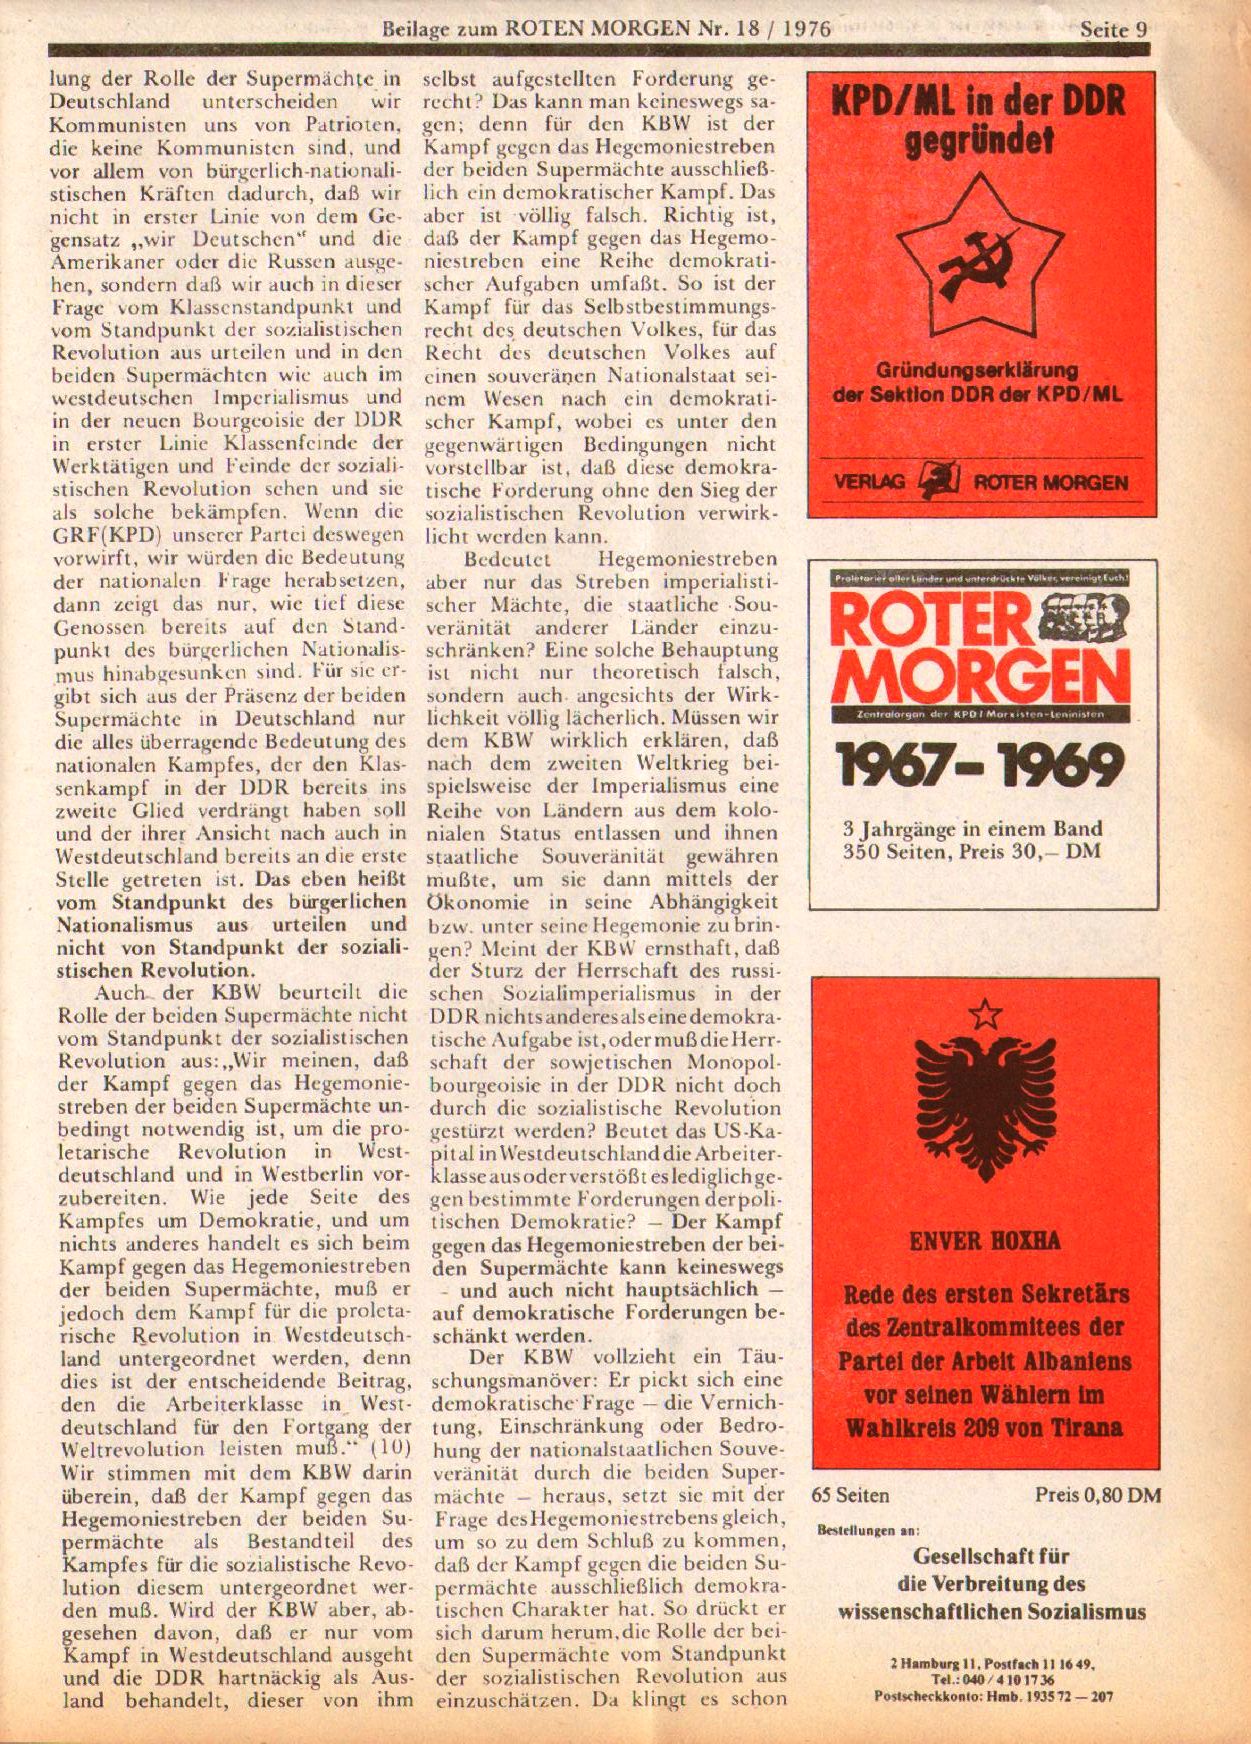 Roter Morgen, 10. Jg., 1. Mai 1976, Beilage: Stellungnahme des Präsidiums der KPD/ML, Seite 9